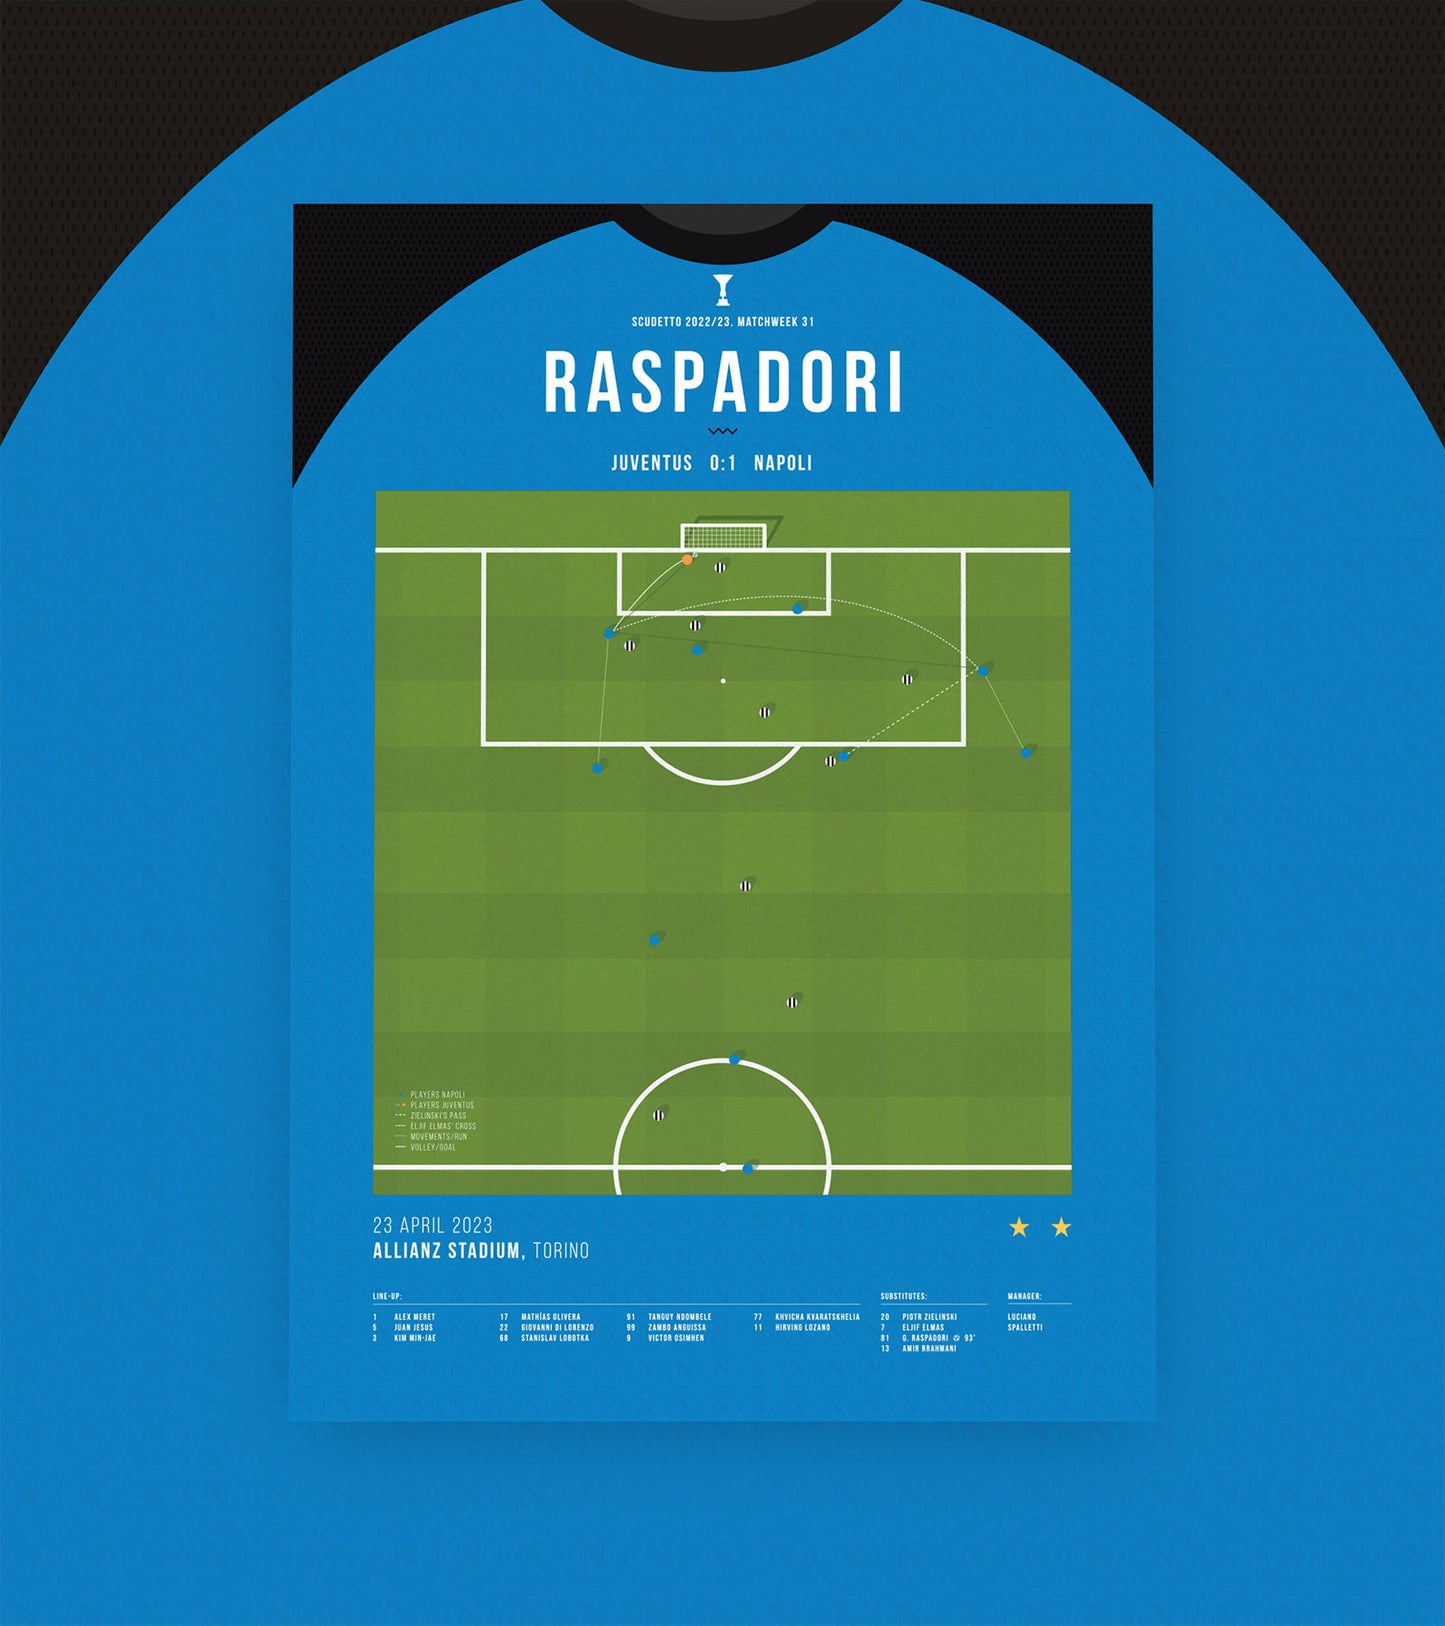 Napoli gets closer to the Scudetto thanks to Raspadori last-gasp winner